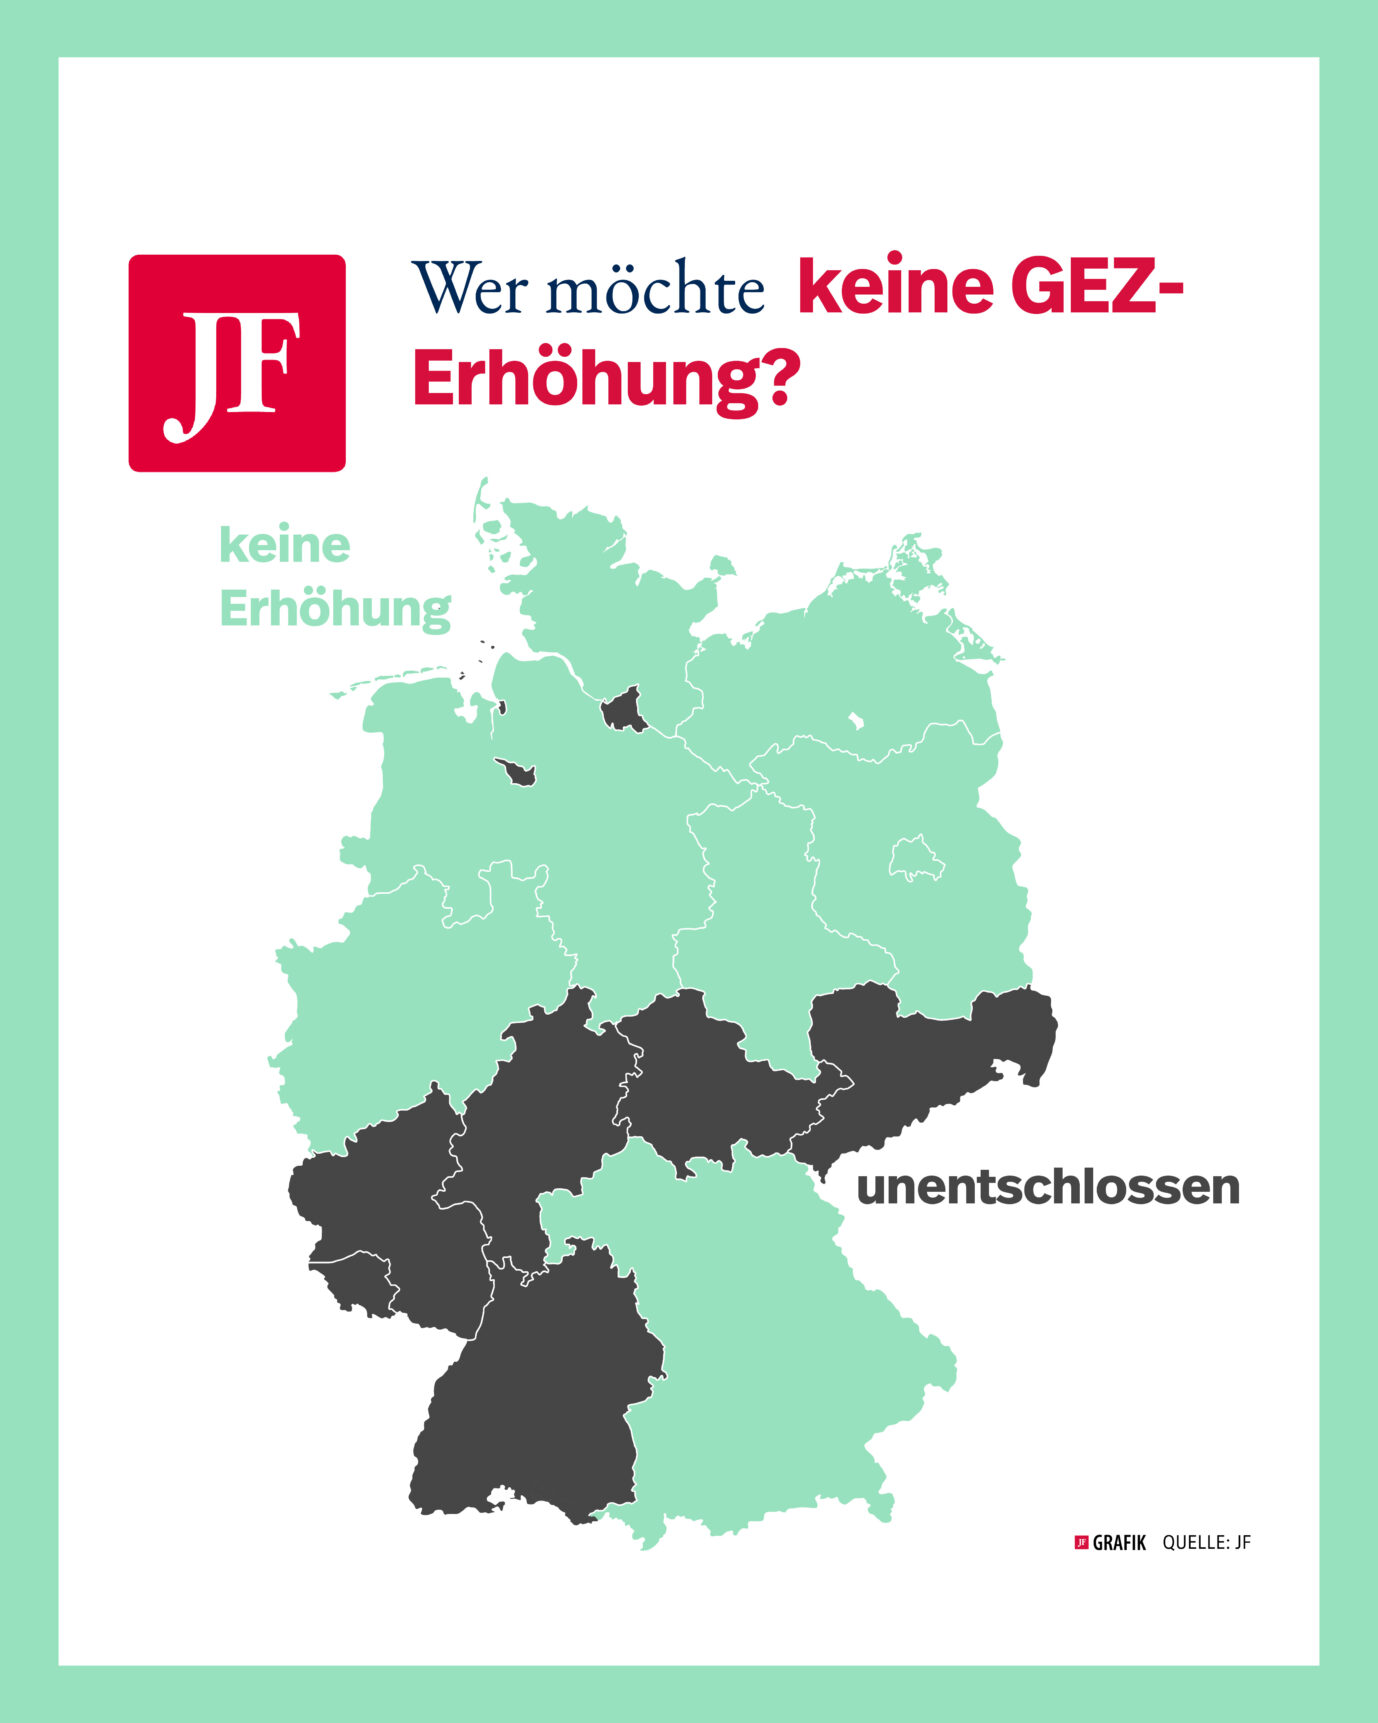 Übersichtskarte Deutschlands mit Bundesländern und deren Einstellung zur GEZ-Erhöhung